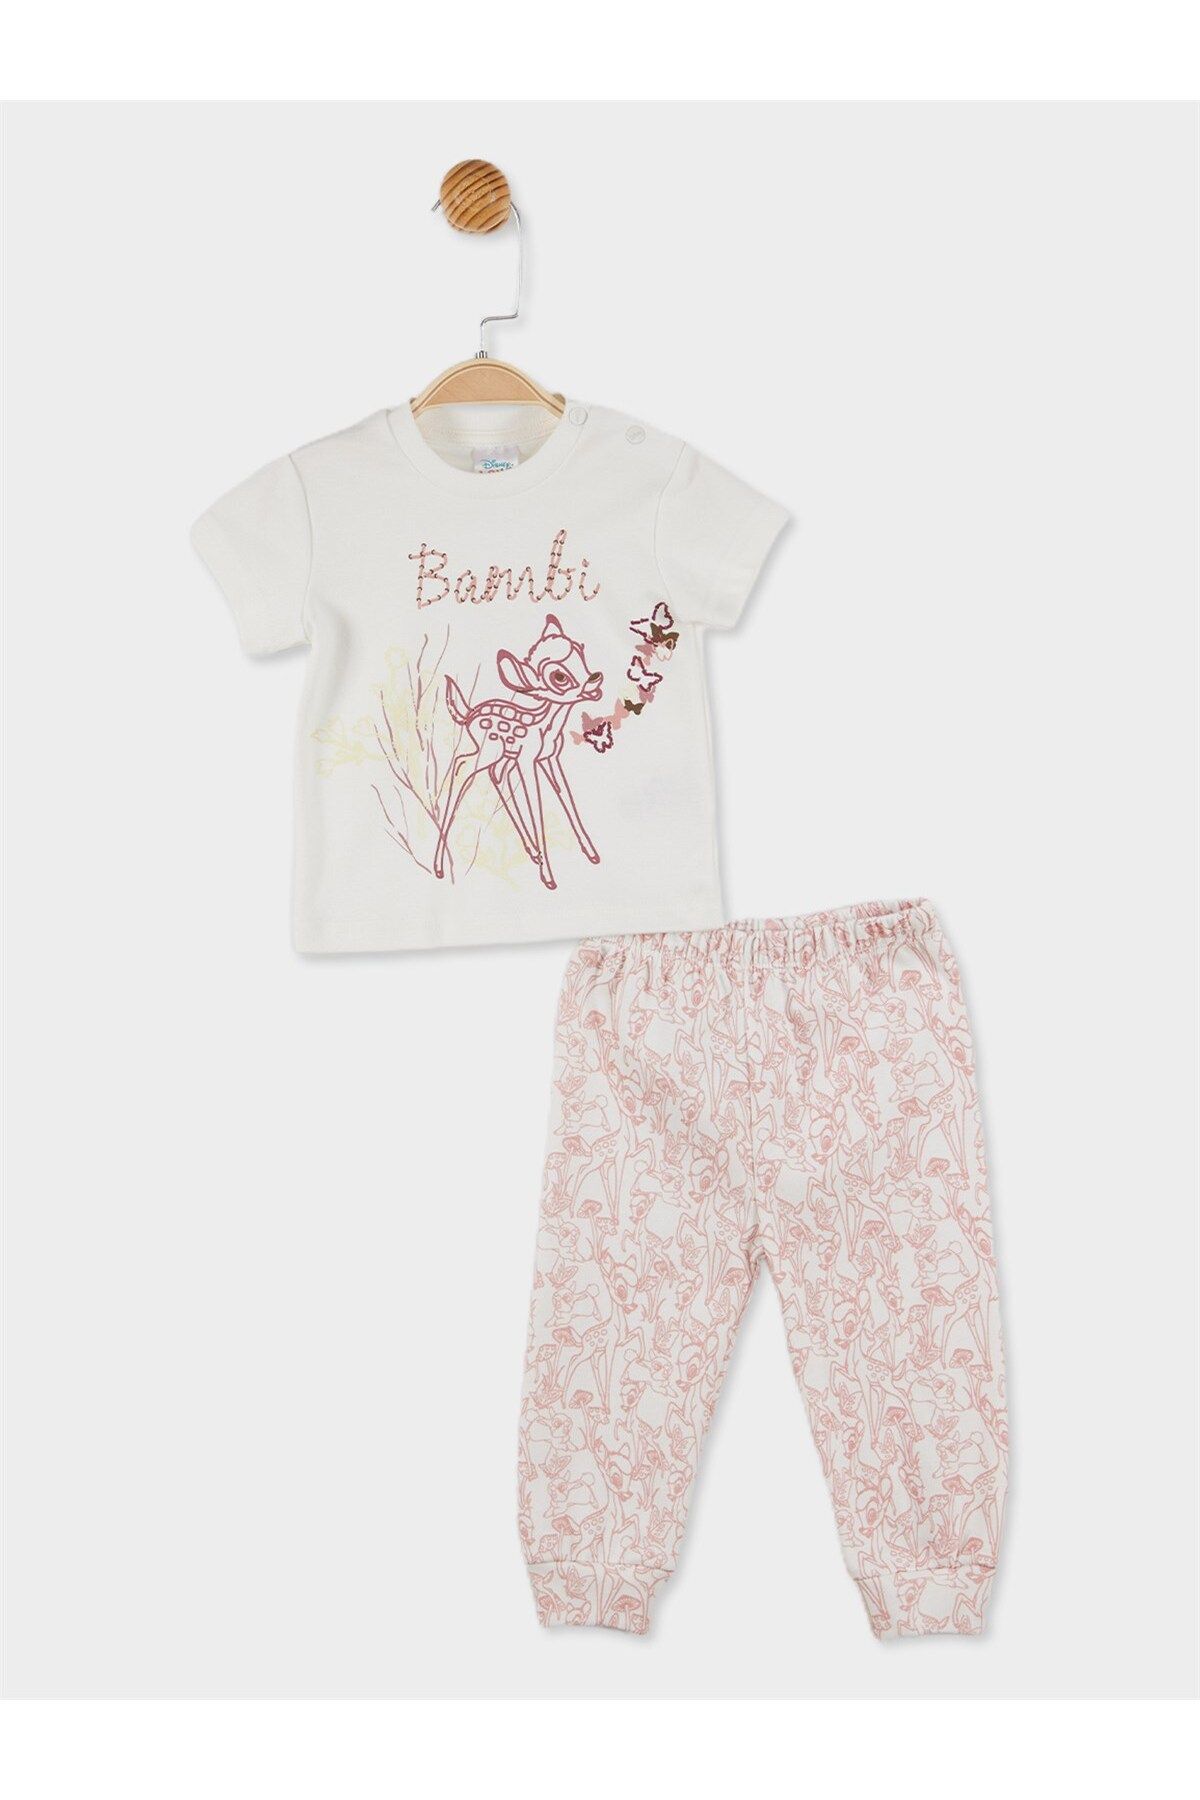 DİSNEY Bambi Lisanslı Kız Bebek Pijama Takımı 20825